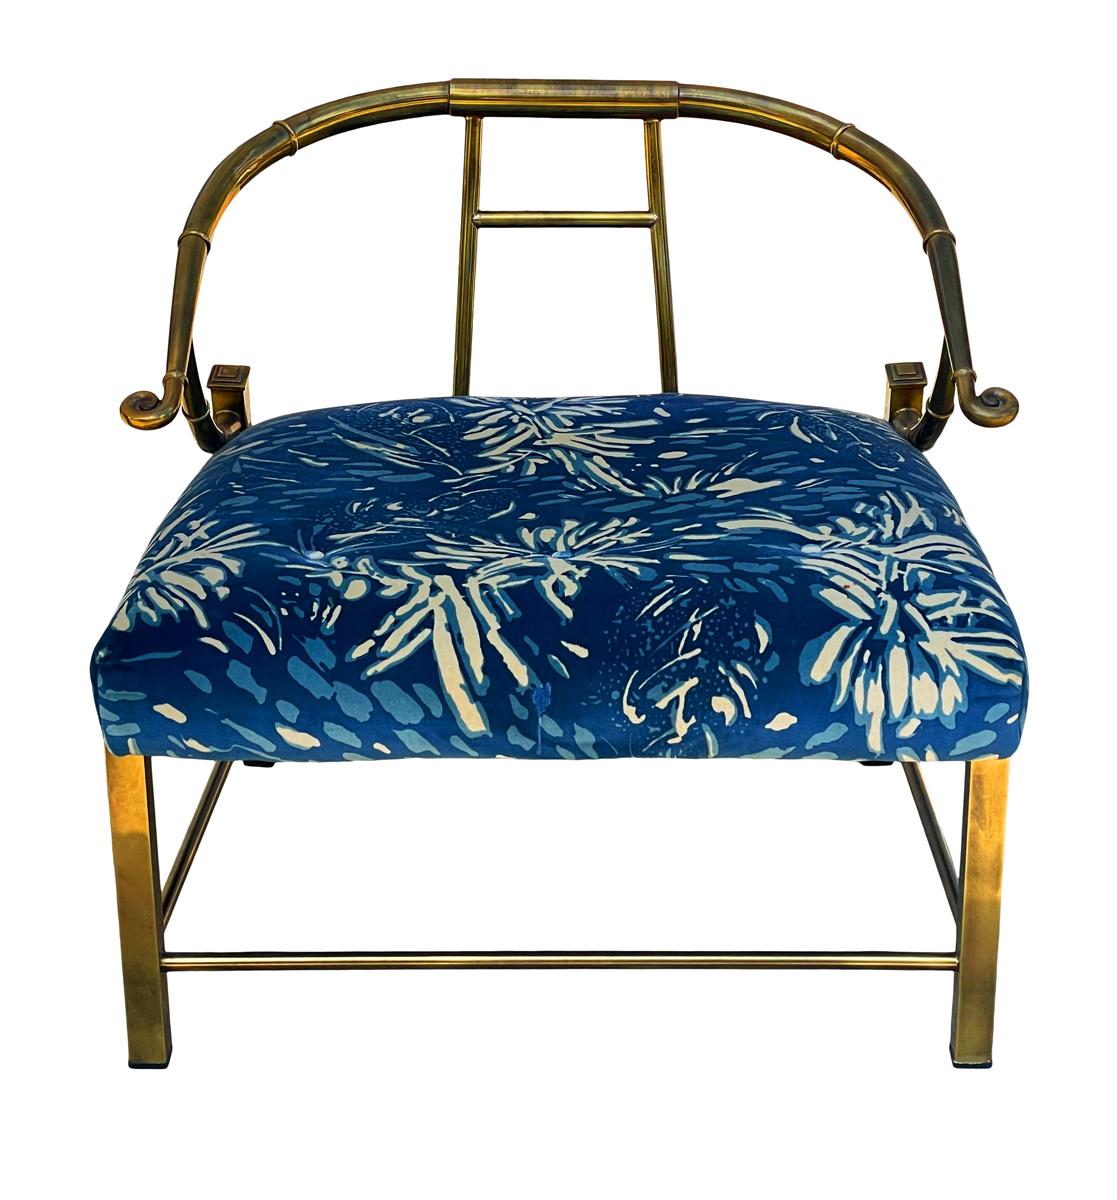 Un fauteuil de salon classique bien construit d'inspiration asiatique produit par Mastercraft au début des années 1970. Il est doté d'un lourd encadrement en laiton et du tissu décoratif d'origine. Prêt à l'emploi.